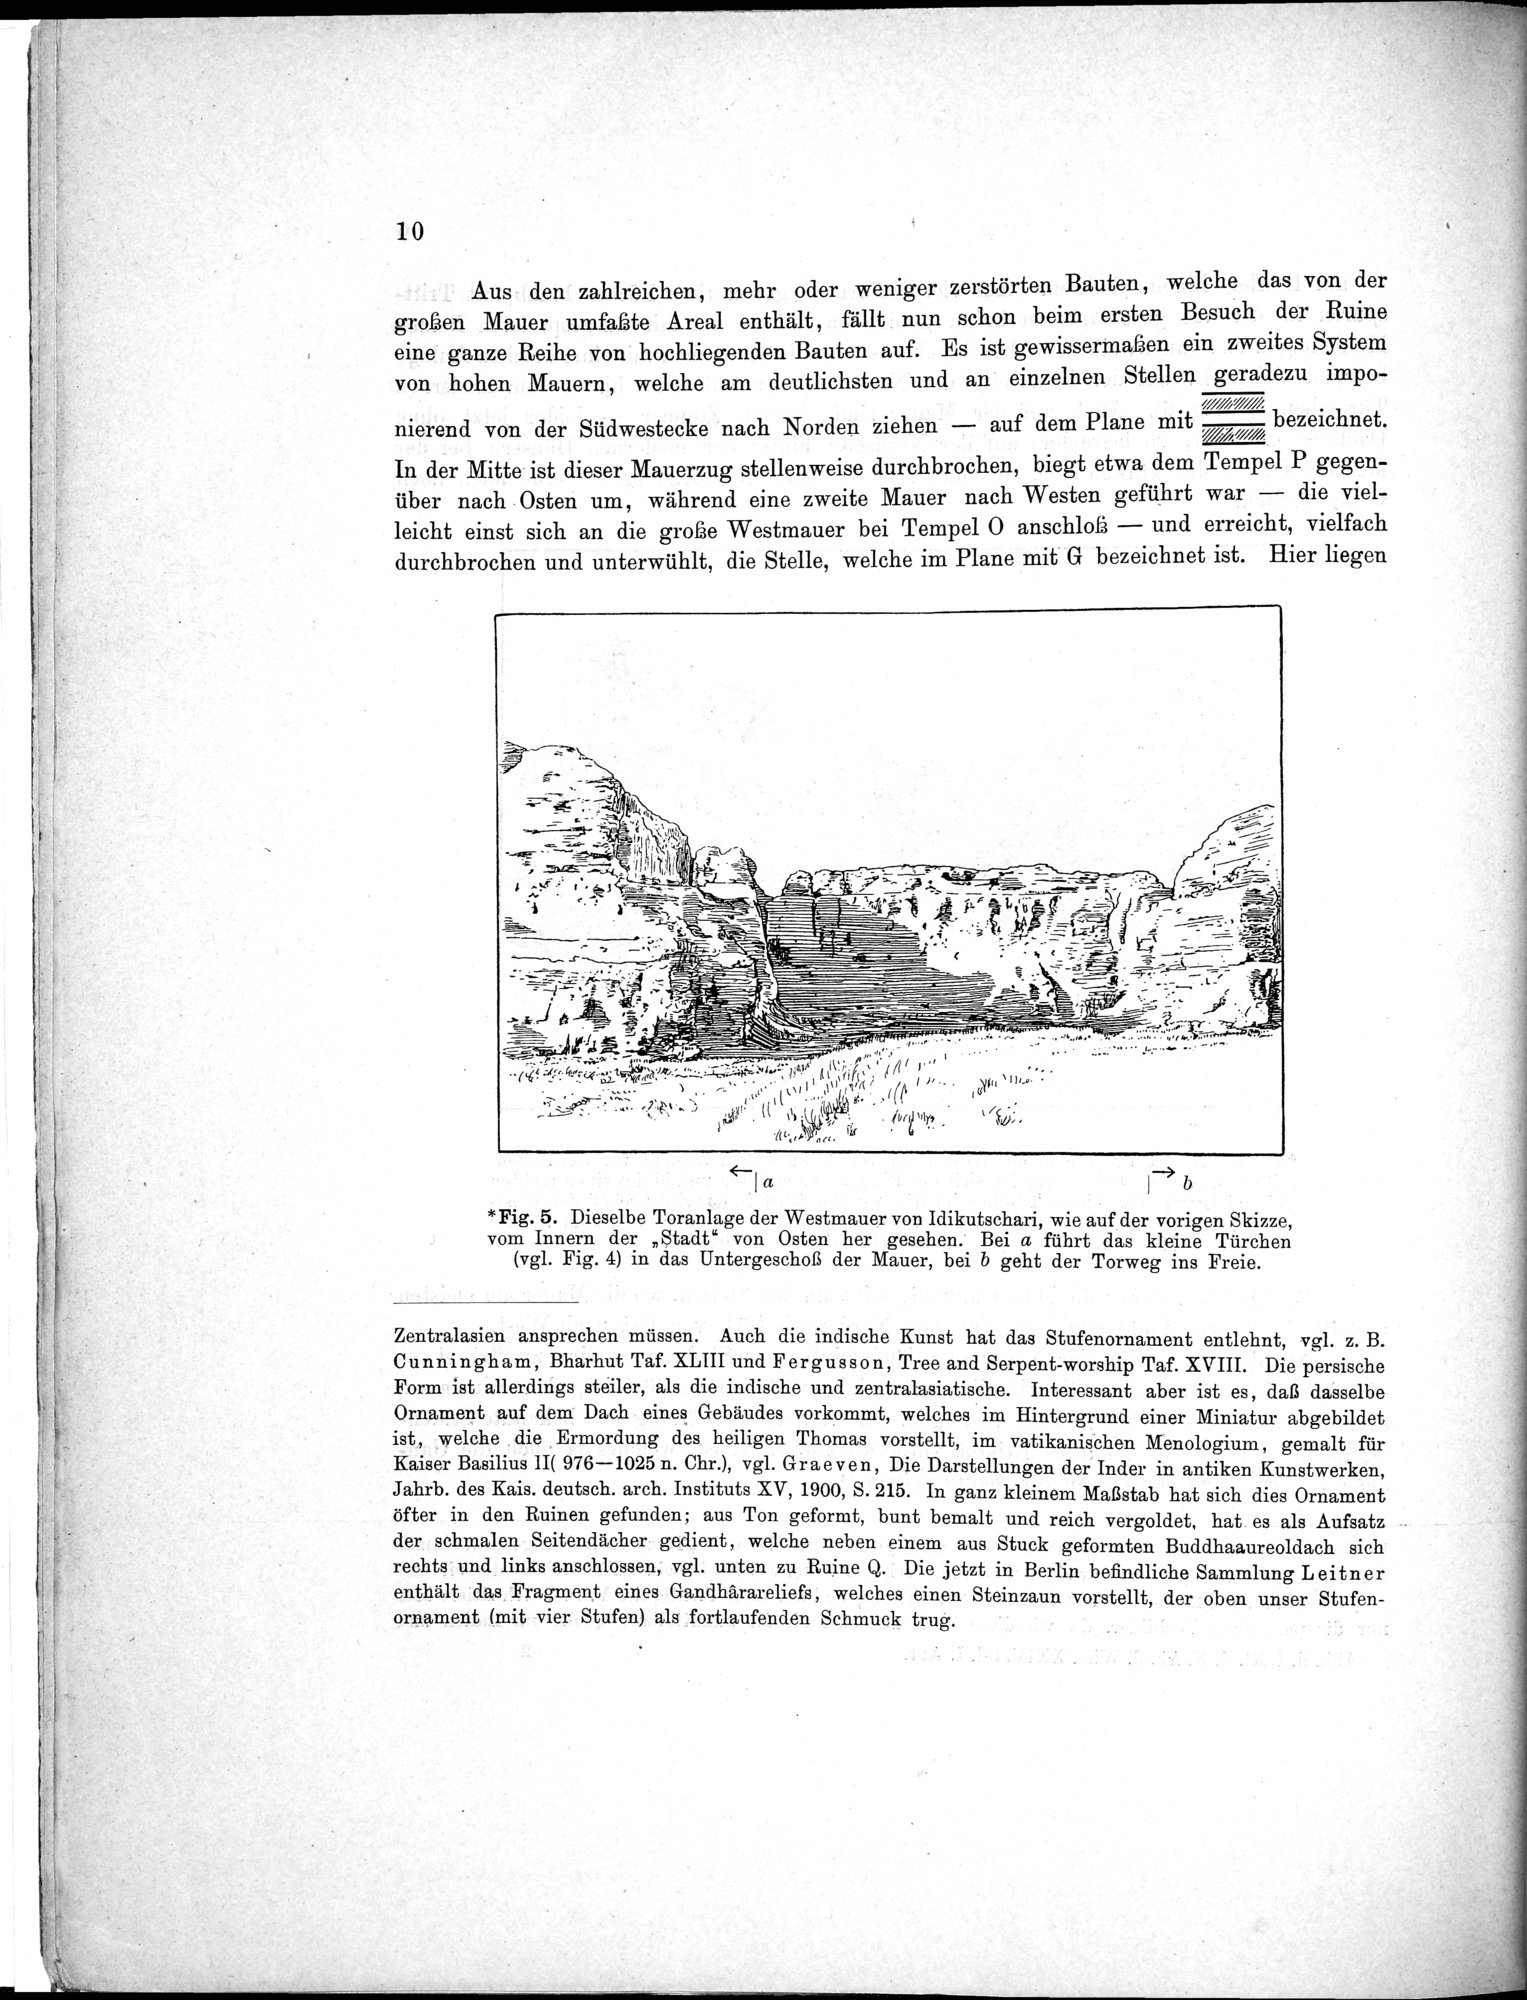 Bericht über archäologische Arbeiten in Idikutschari und Umgebung im Winter 1902-1903 : vol.1 / Page 20 (Grayscale High Resolution Image)